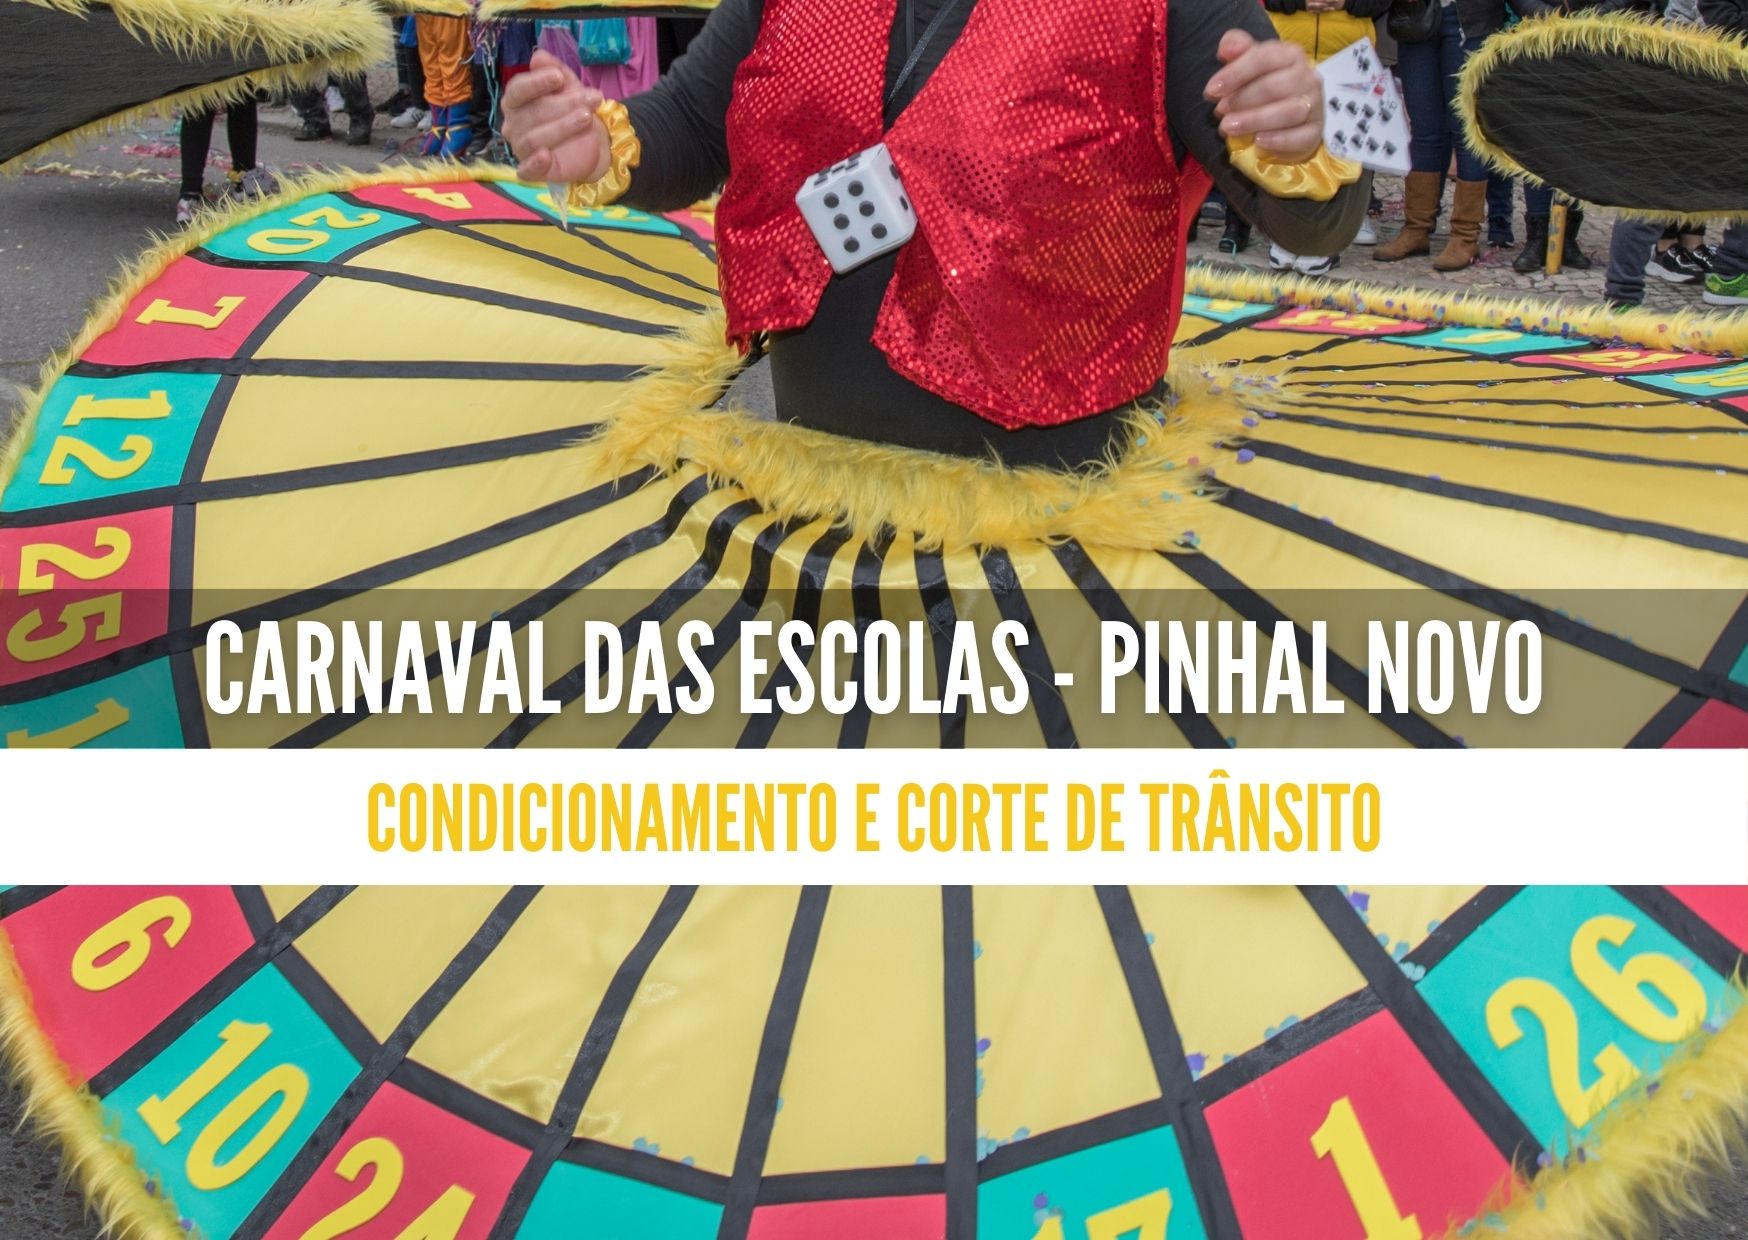 Carnaval das Escolas - Pinhal Novo: trânsito condicionado a 9 fevereiro